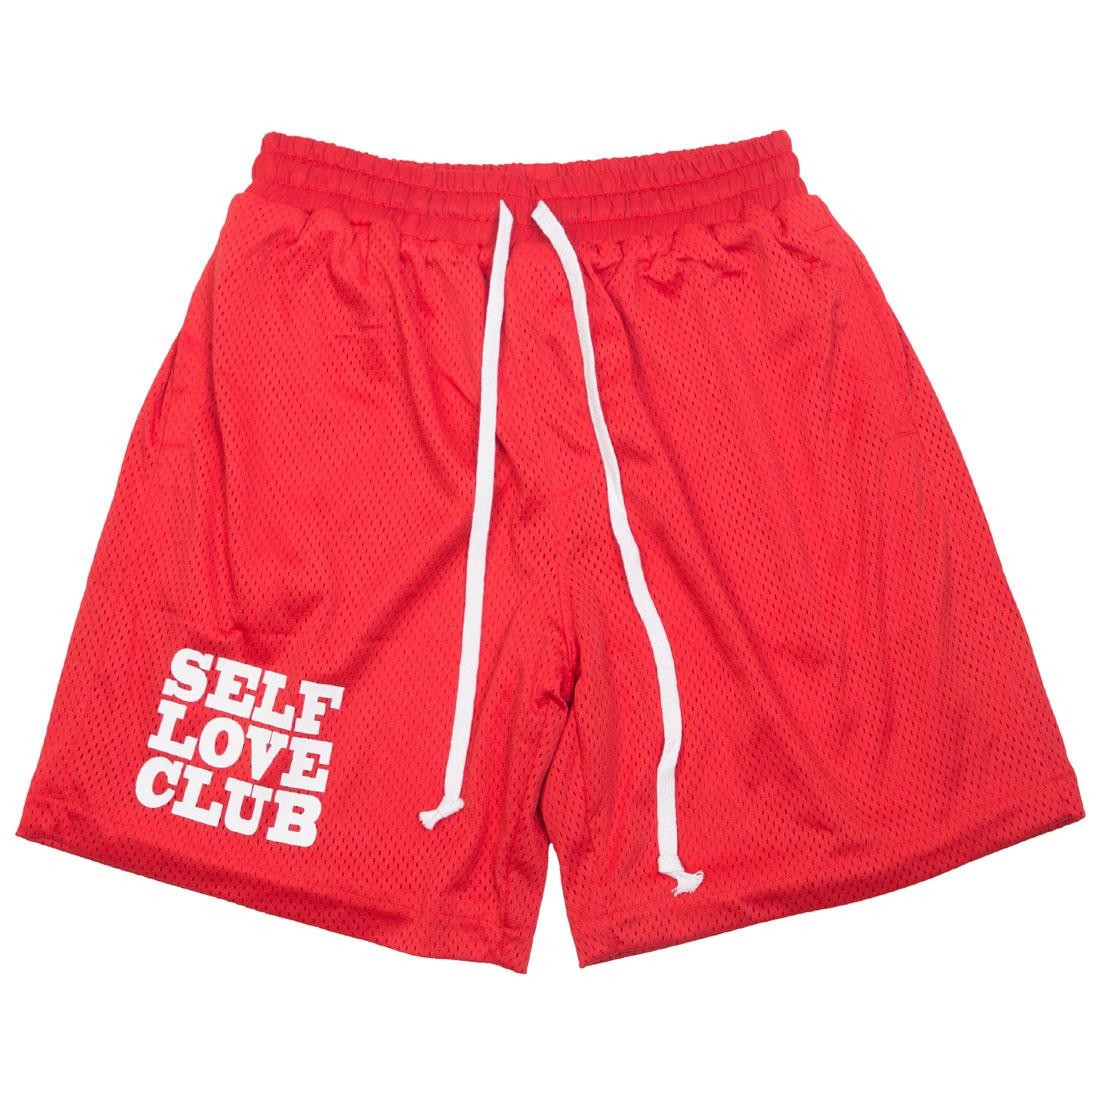 mens red basketball shorts